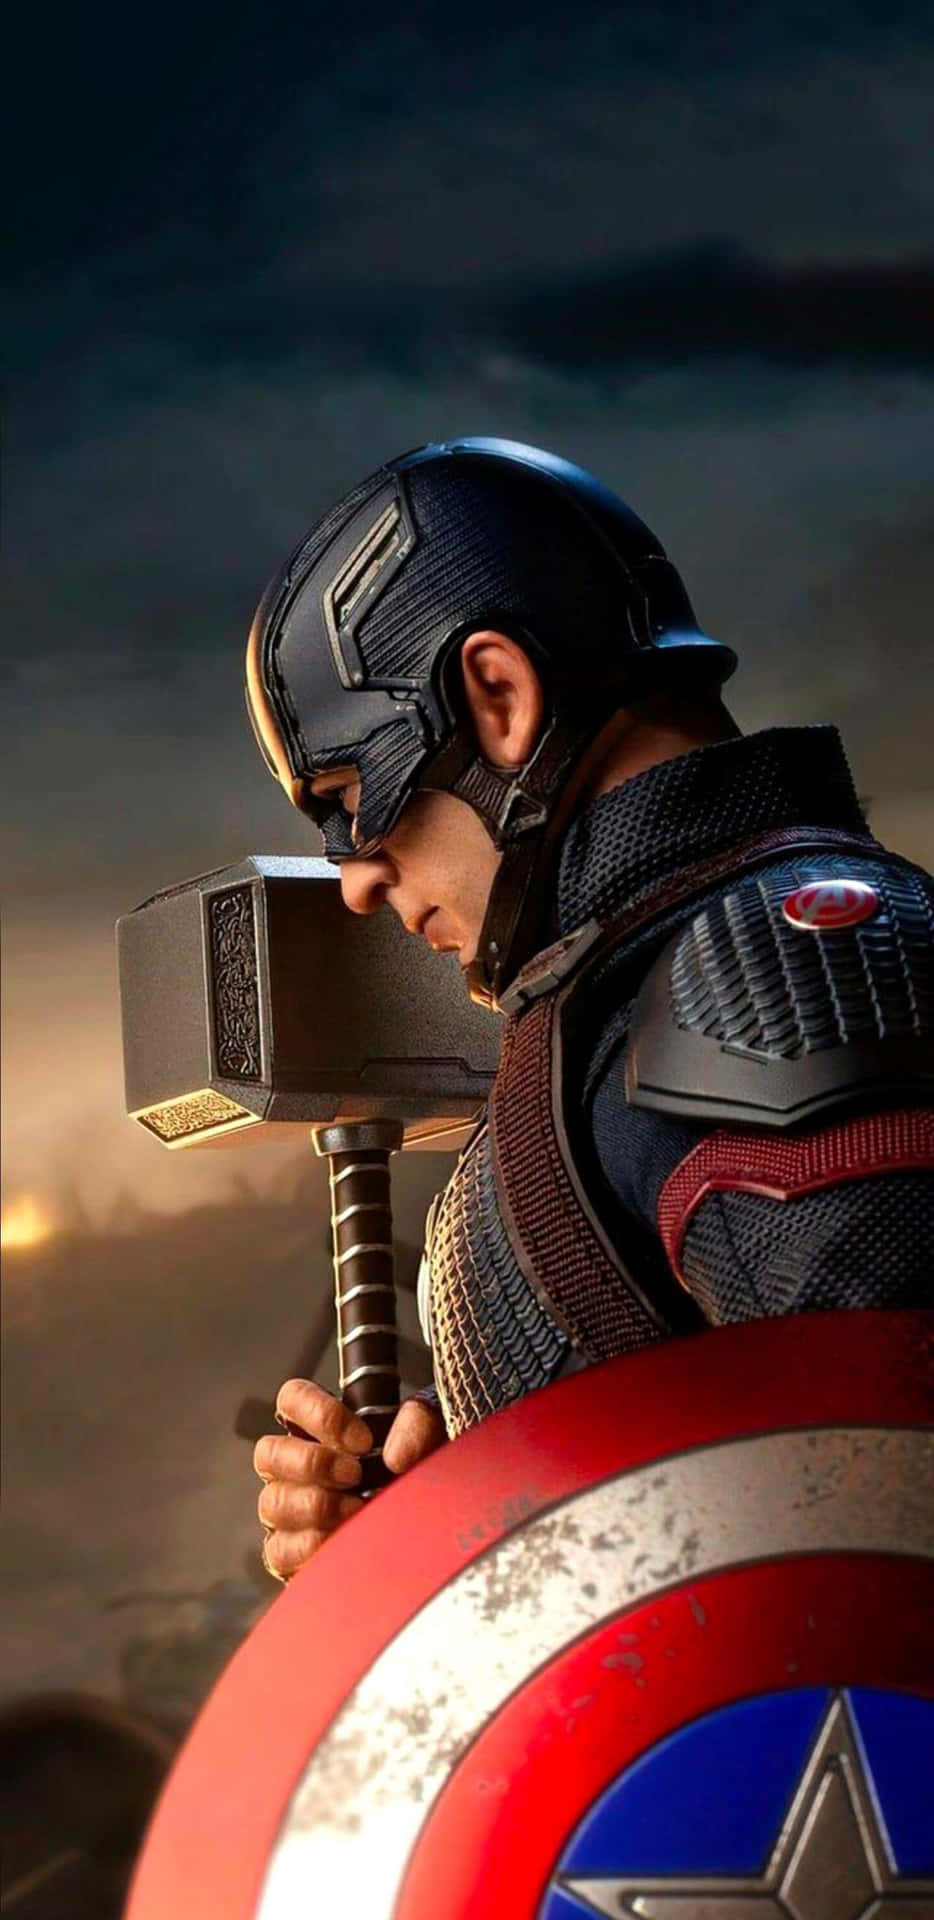 Pixel3xl Bakgrund Med Captain America Från Avengers Endgame